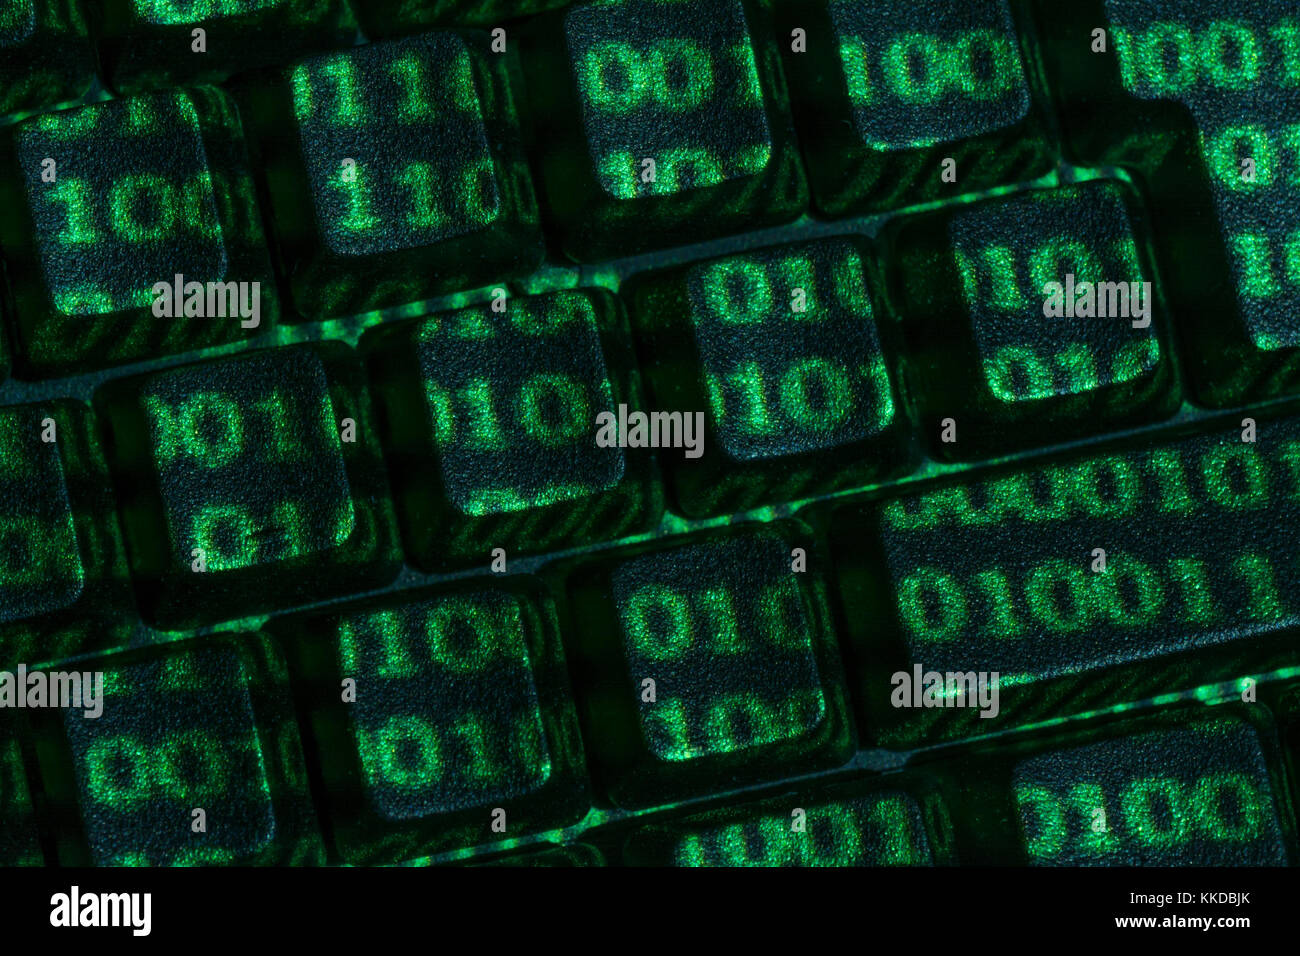 Schwarze QWERTY-Tastatur + grüne Oberfläche von Binary 0 und 1 projiziert. Cyberkriminalität, Darkweb, Datenverschlüsselung, Welt-Passwort-Tag, Cyber-Bedrohung, Hacking. Stockfoto